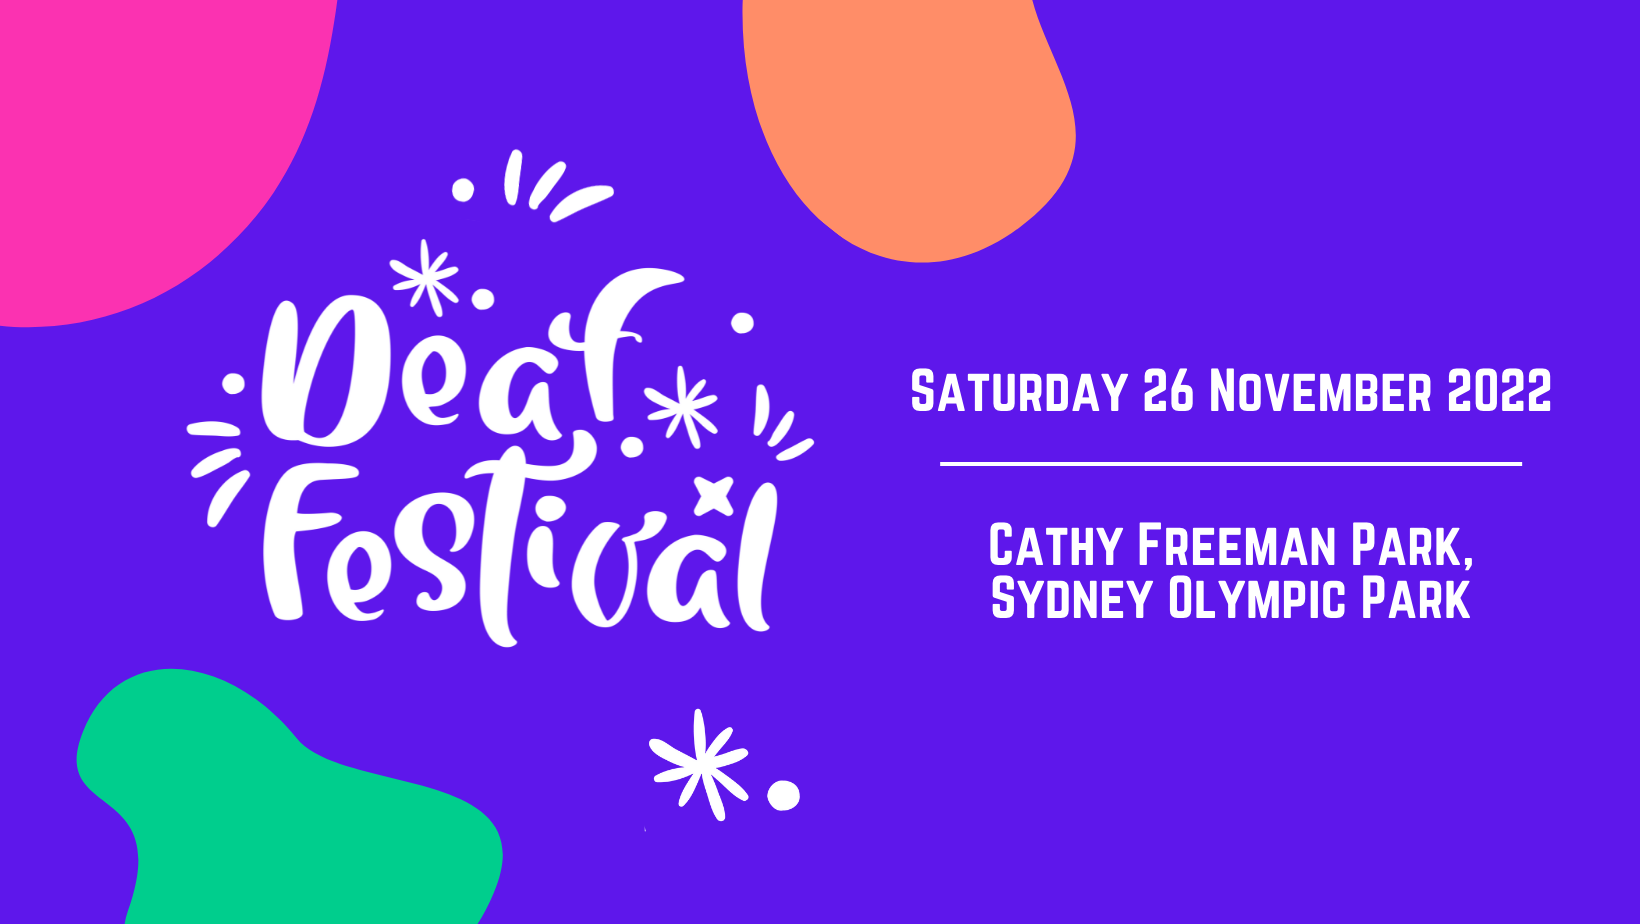 Deaf festival